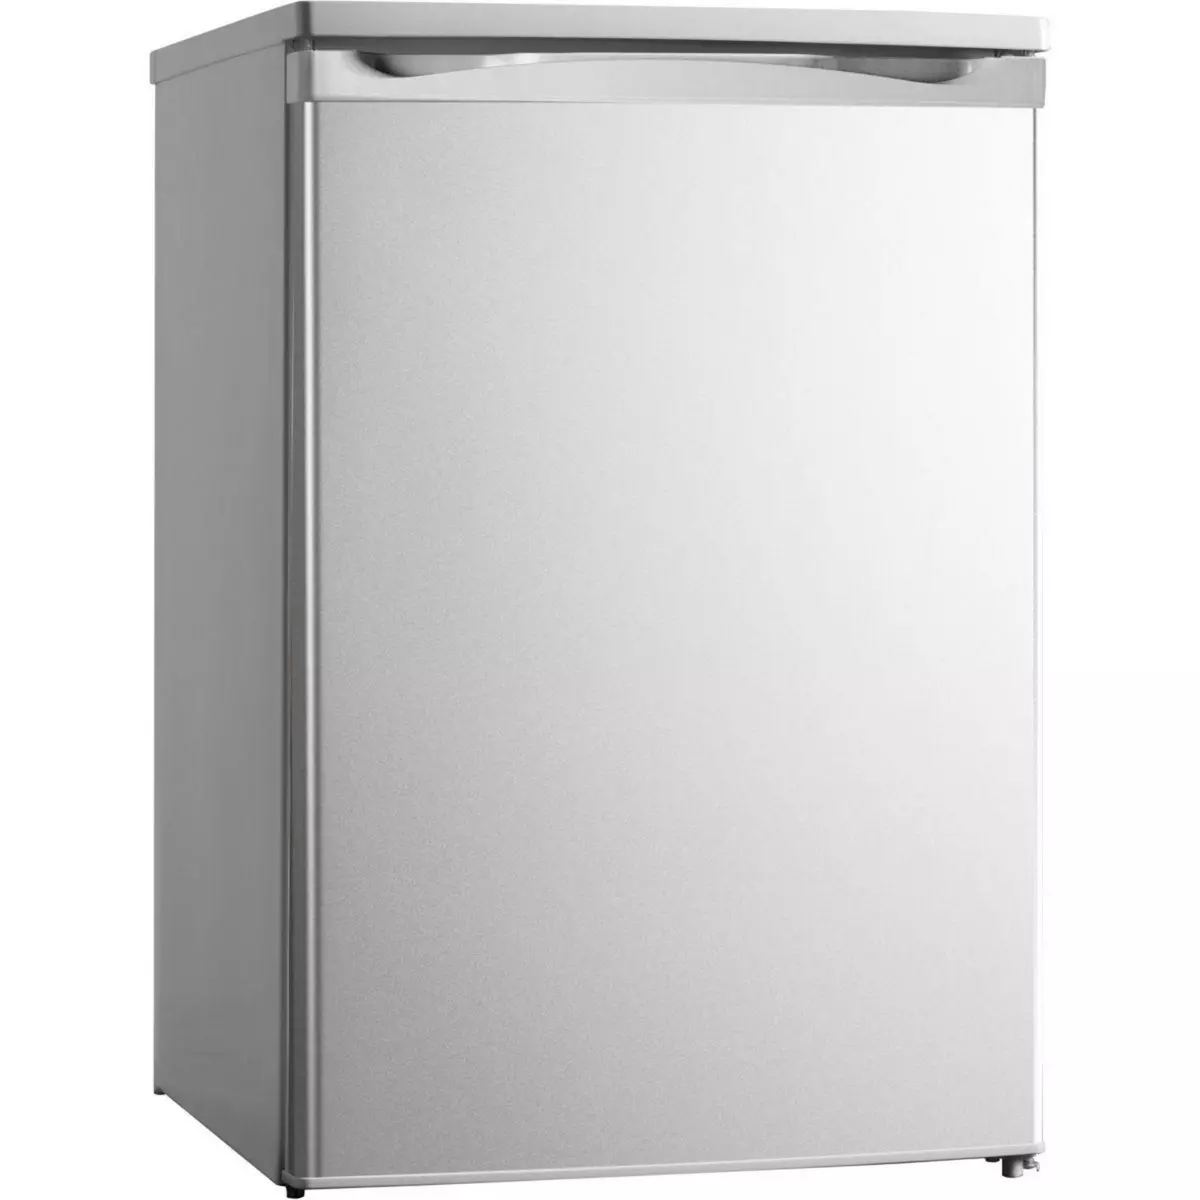 ESSENTIEL B Réfrigérateur top ERT85-55mis1